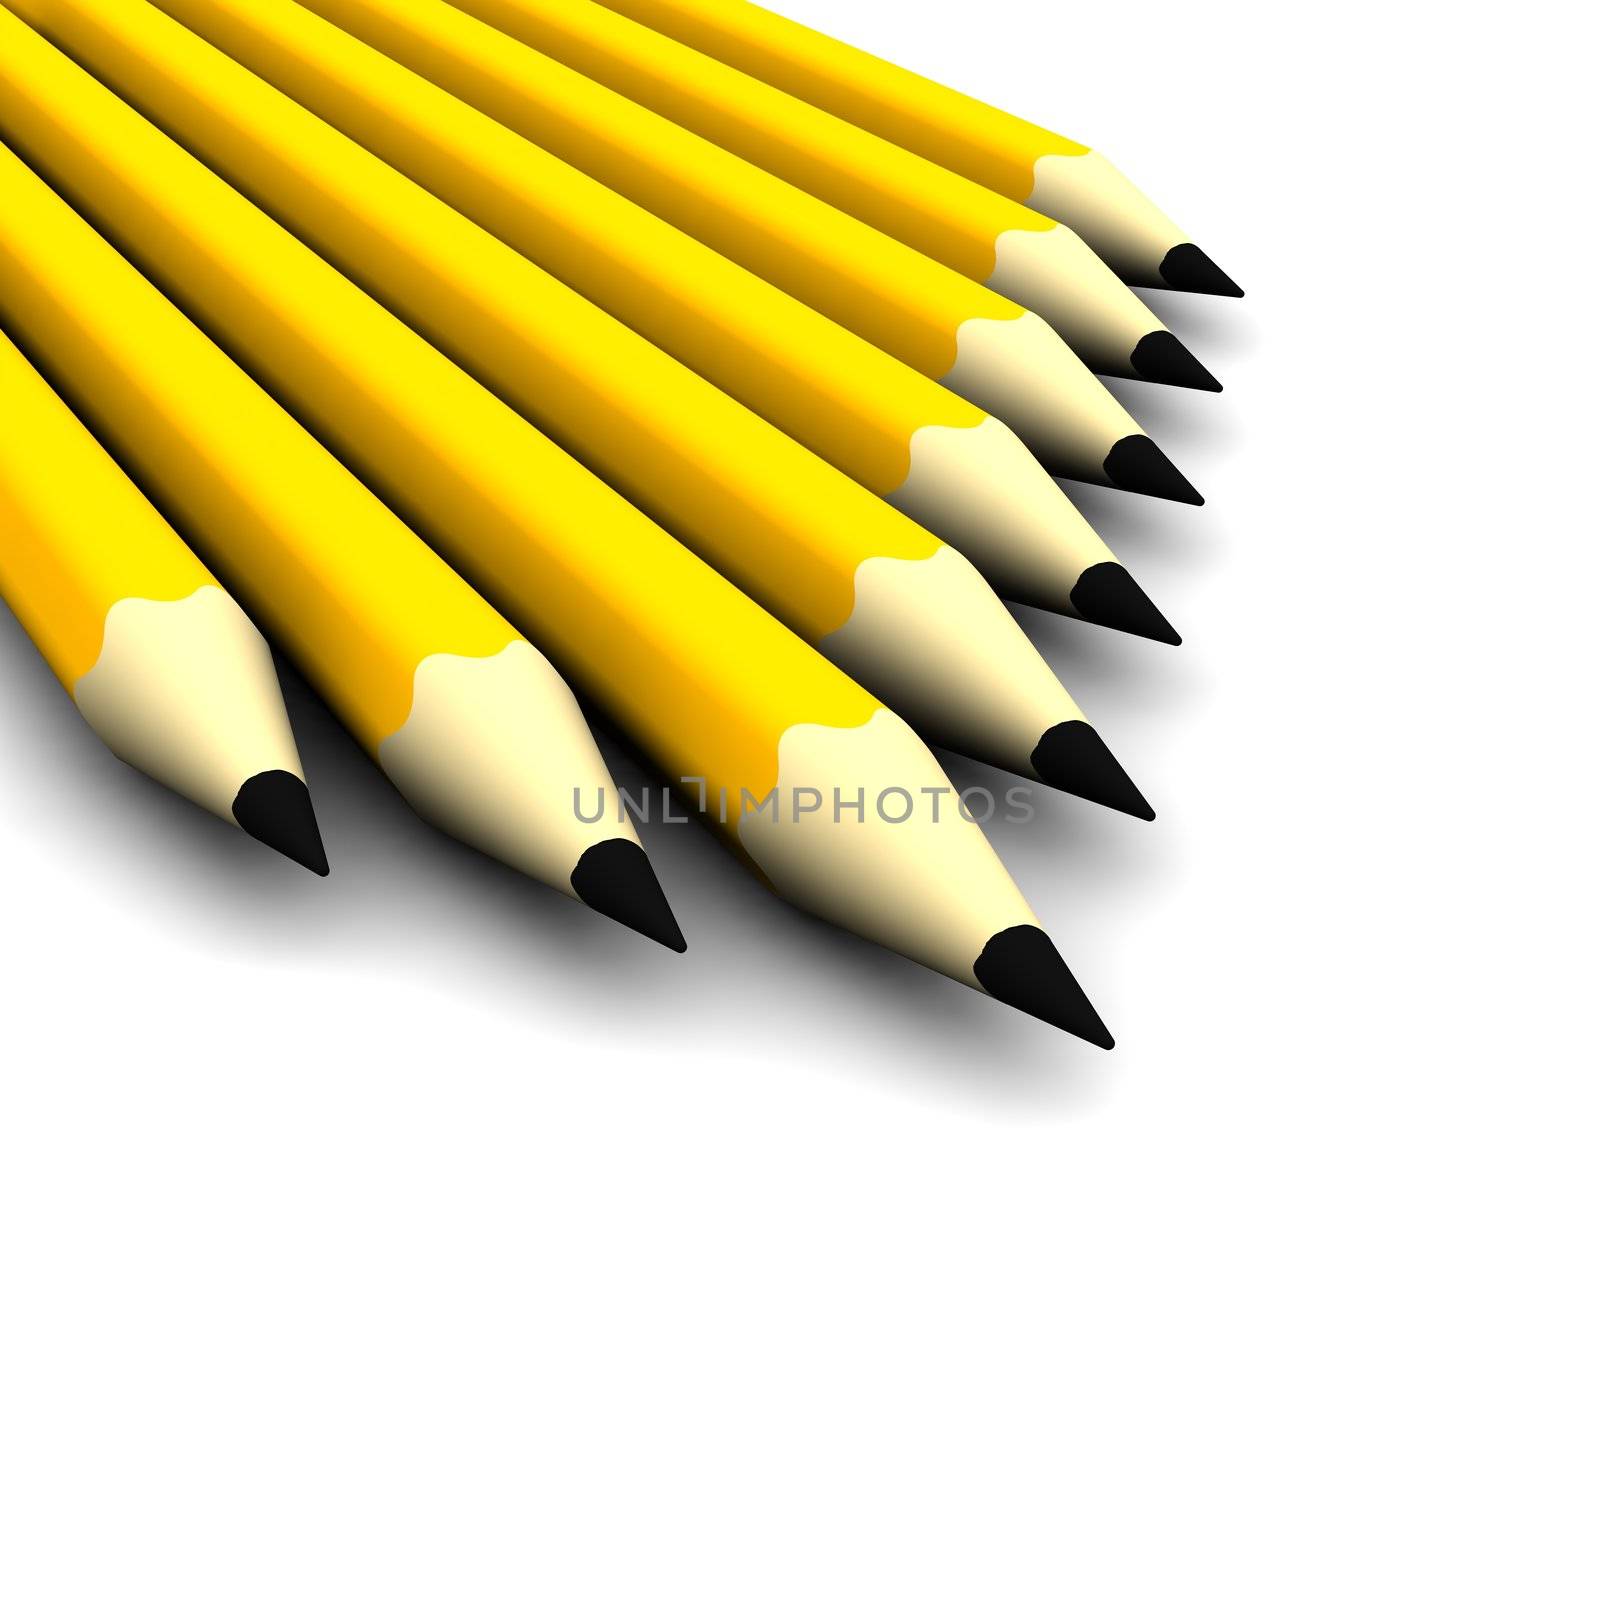 Pencils by skvoor